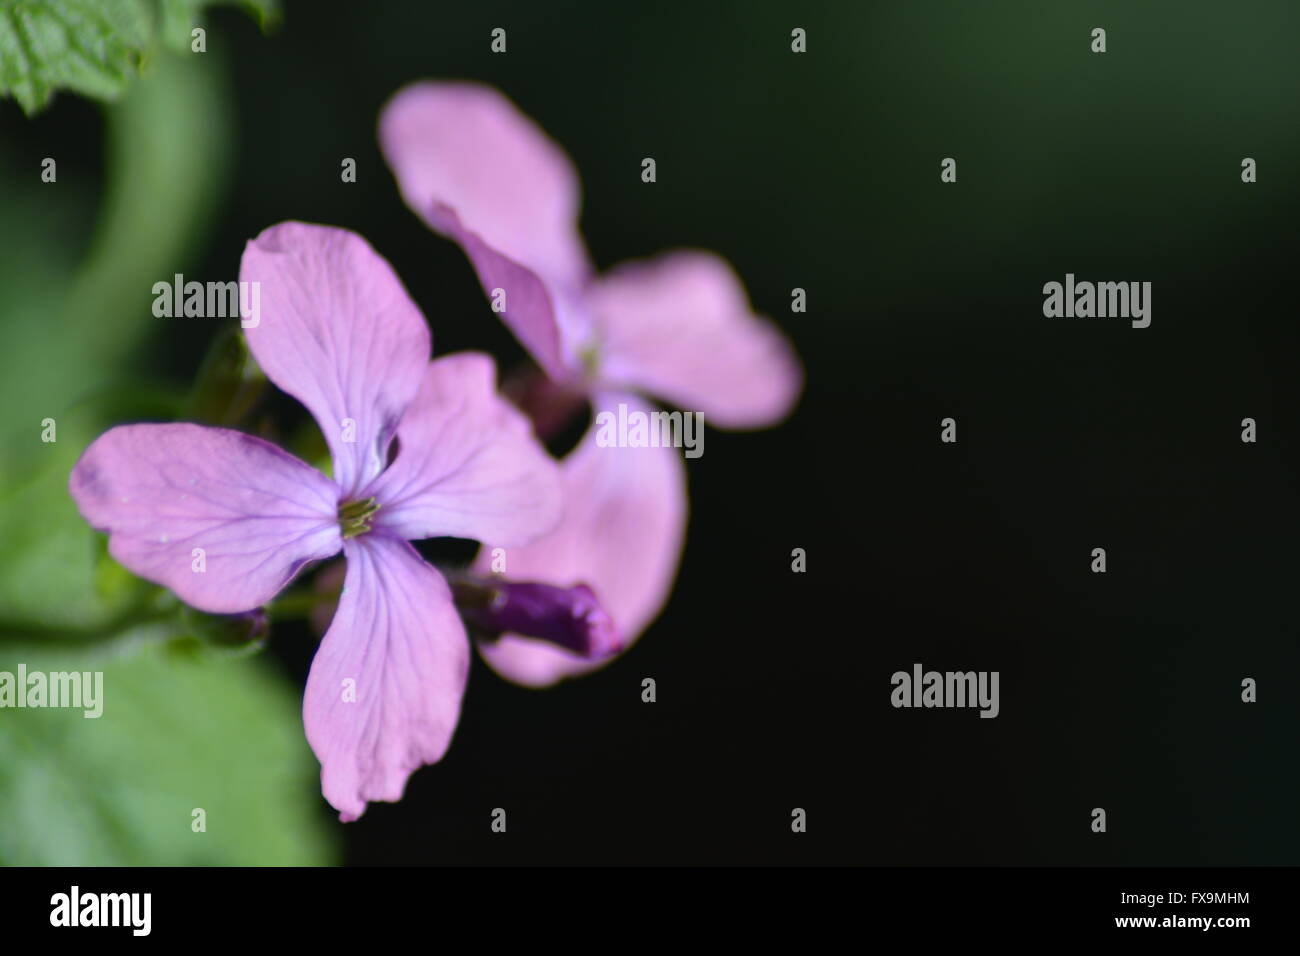 Flowering periwinkles in spring Stock Photo